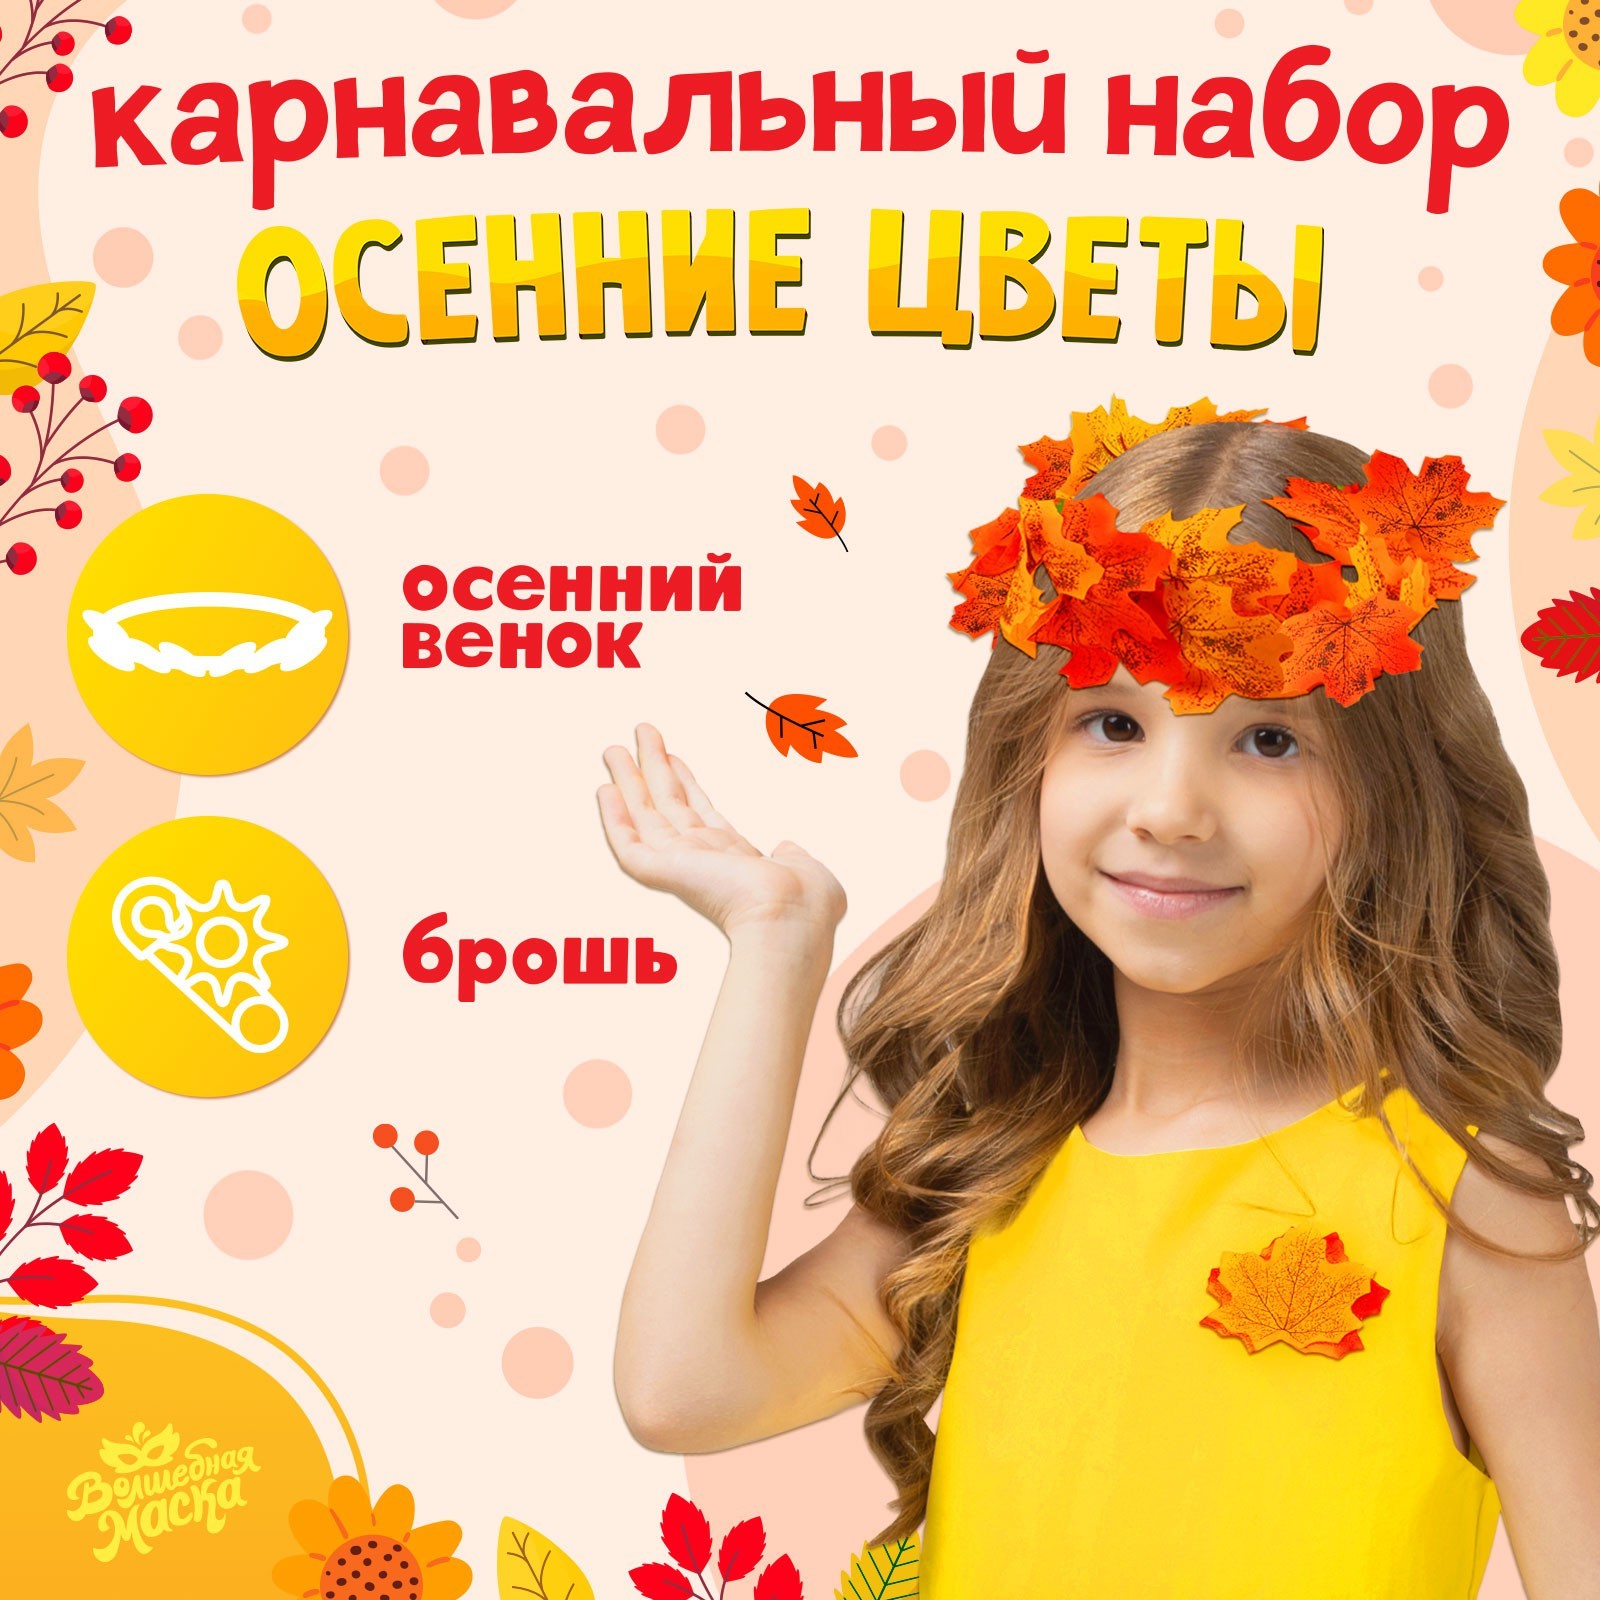 Карнавальный набор Волшебная маска, Осенние цветы, венок из листьев и брошь